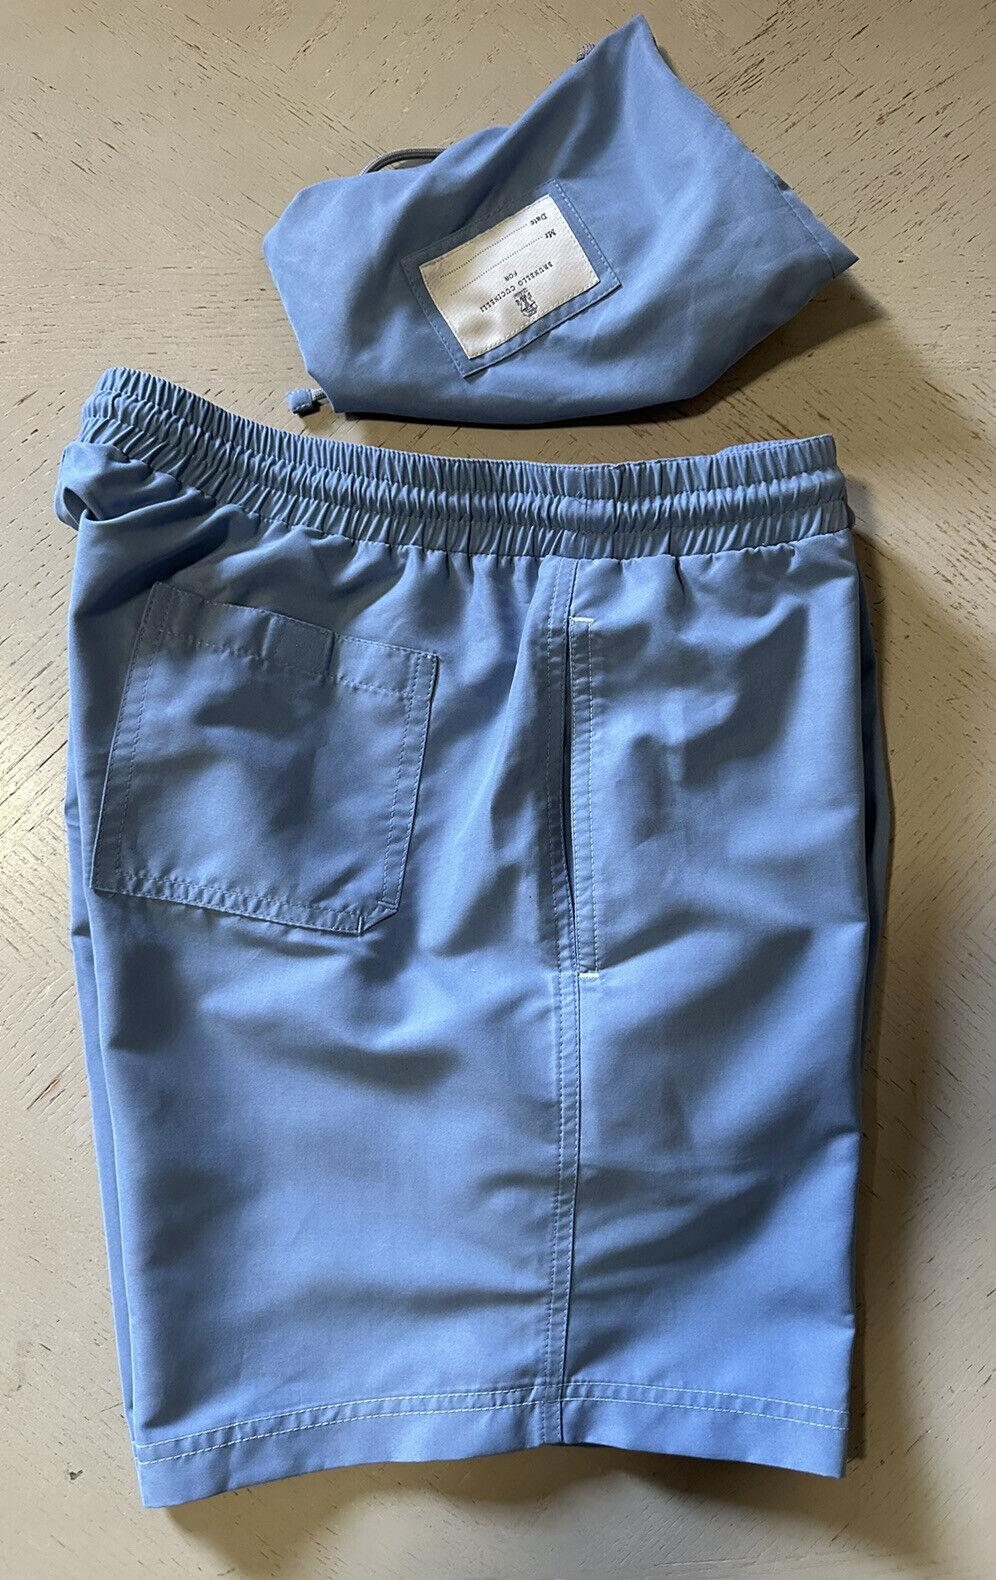 Neu mit Etikett: 550 $ Brunello Cucinelli Herren-Badeshorts mit Kordelzug, Farbe Blau, XL